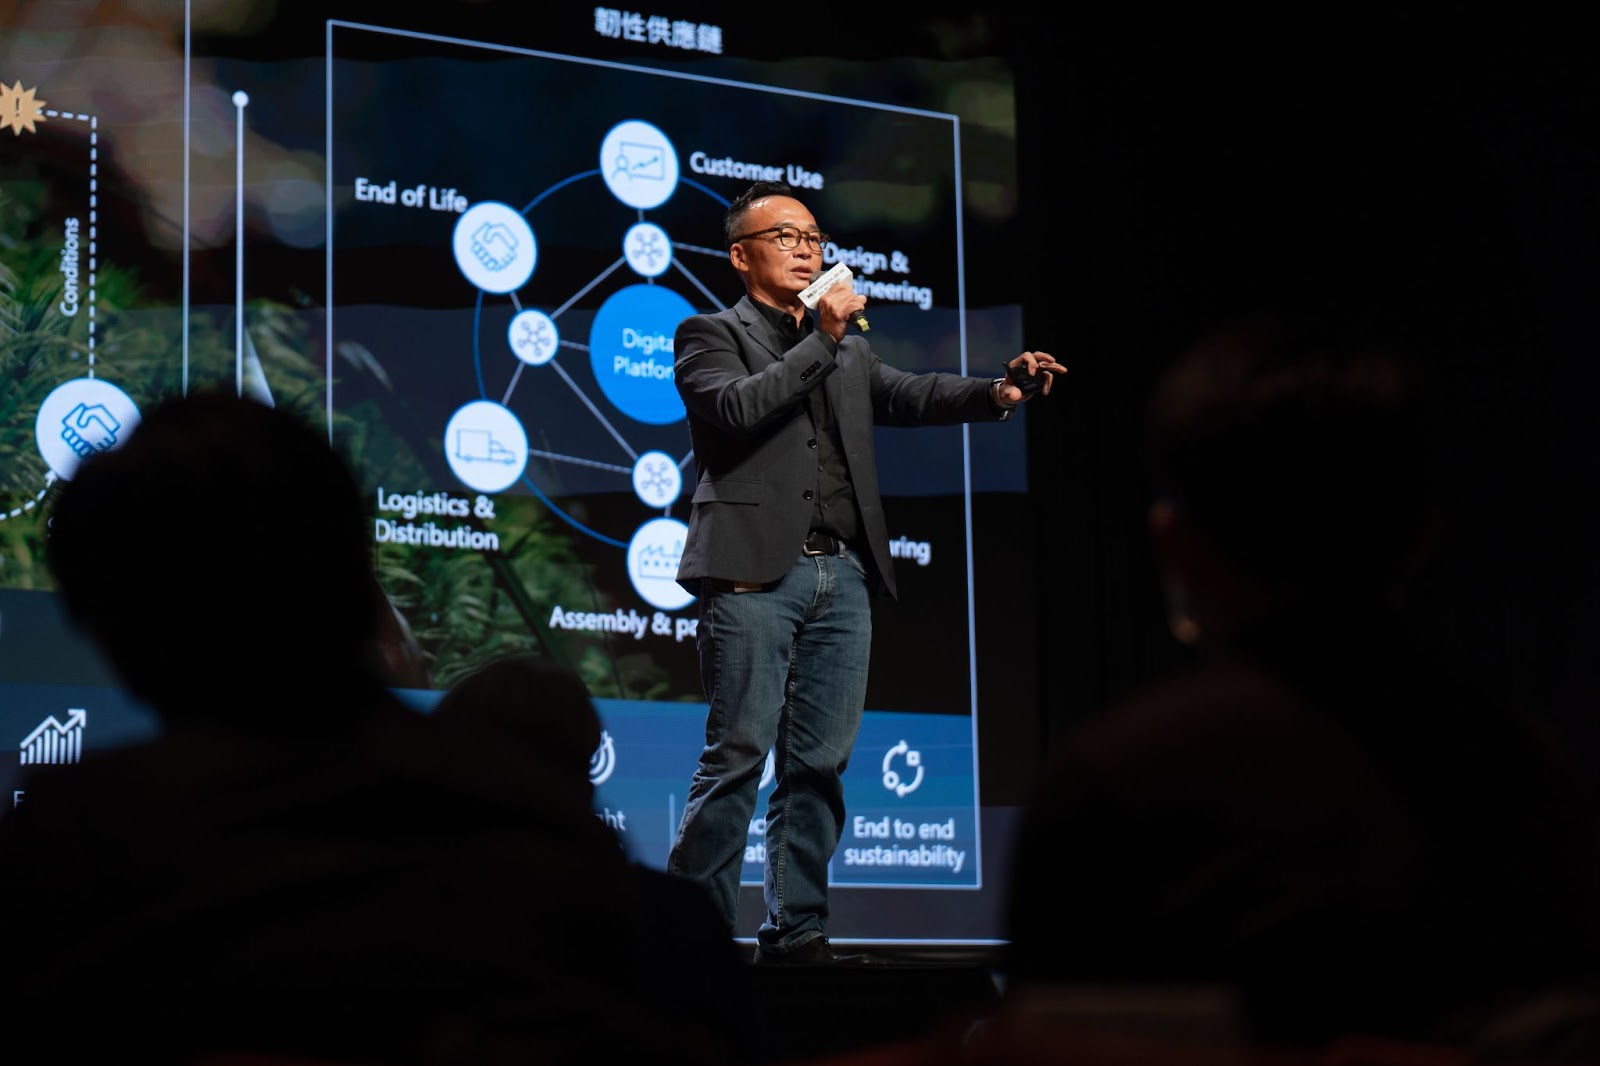 台灣微軟合作夥伴事業群副總經理 呂欣育 分享透過雲平台打造綠色供應鏈